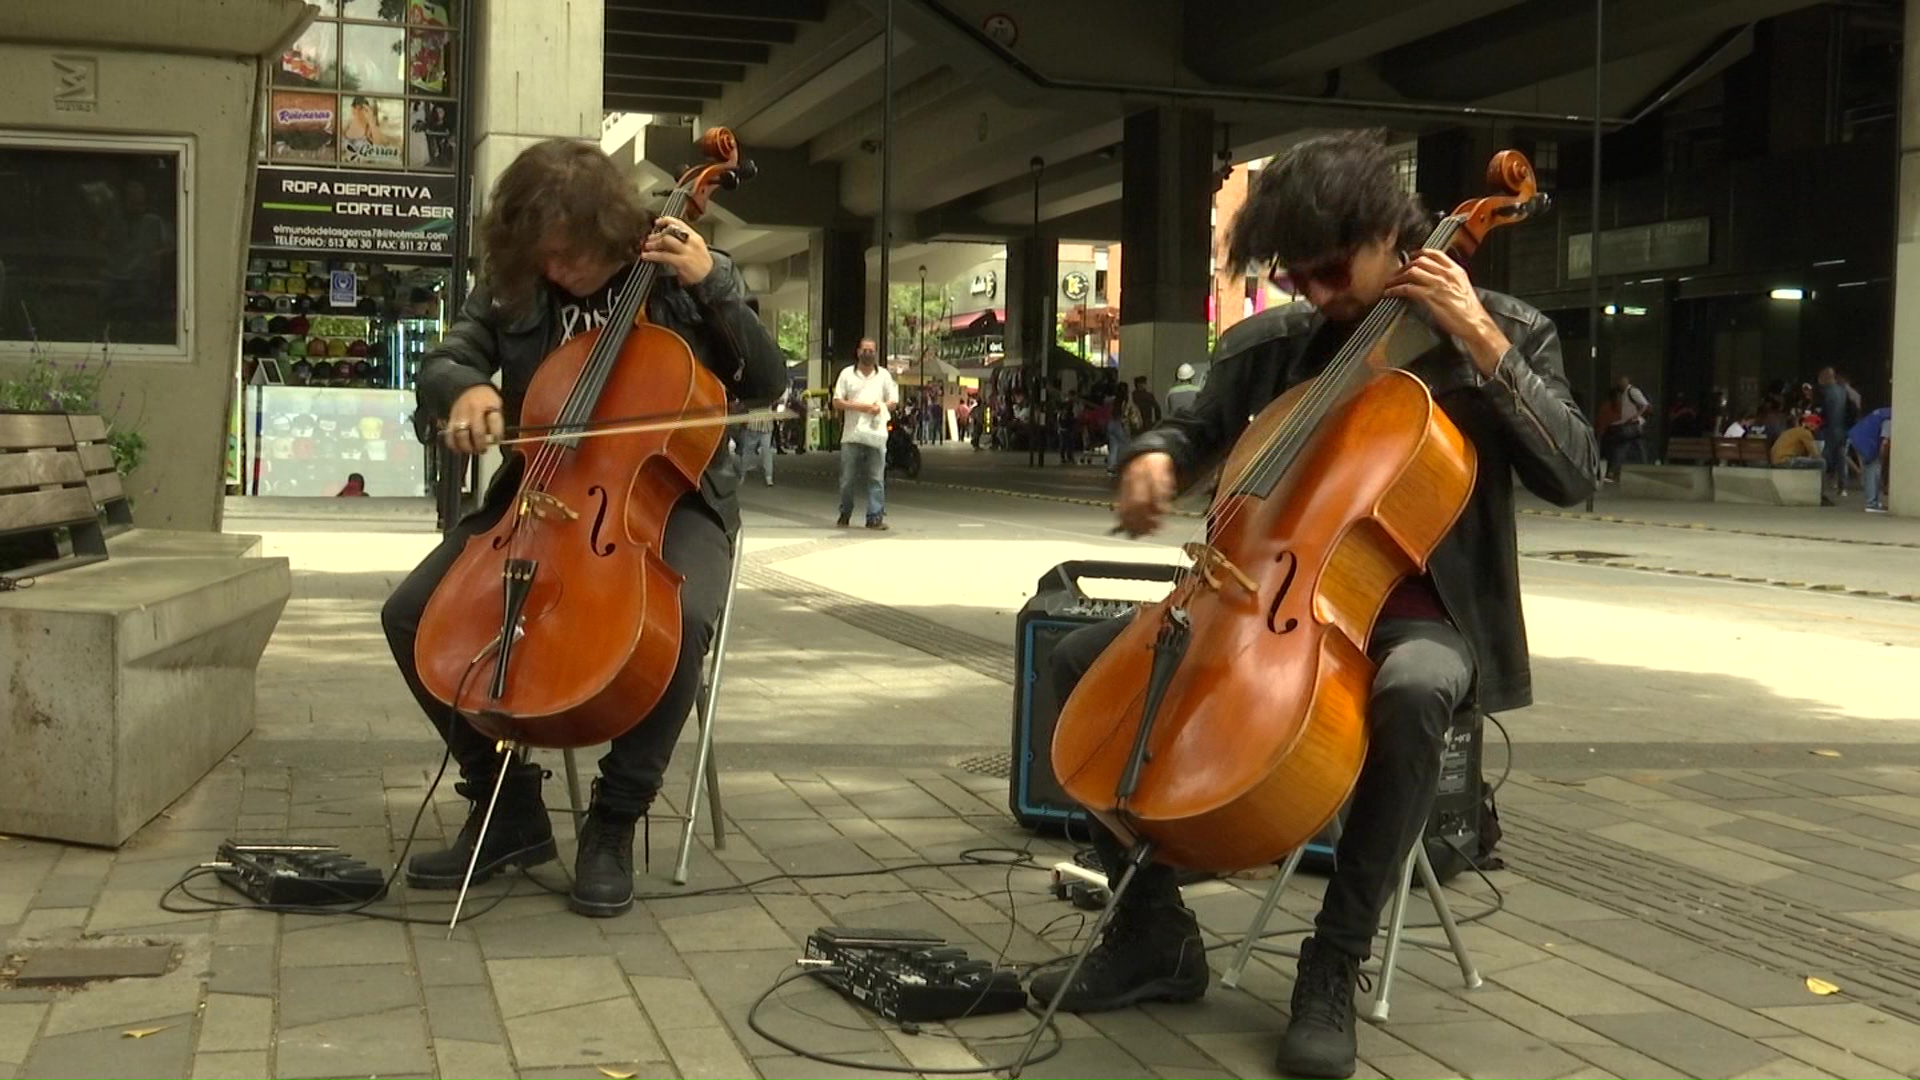 Rock y violonchelos, una mezcla de cultura